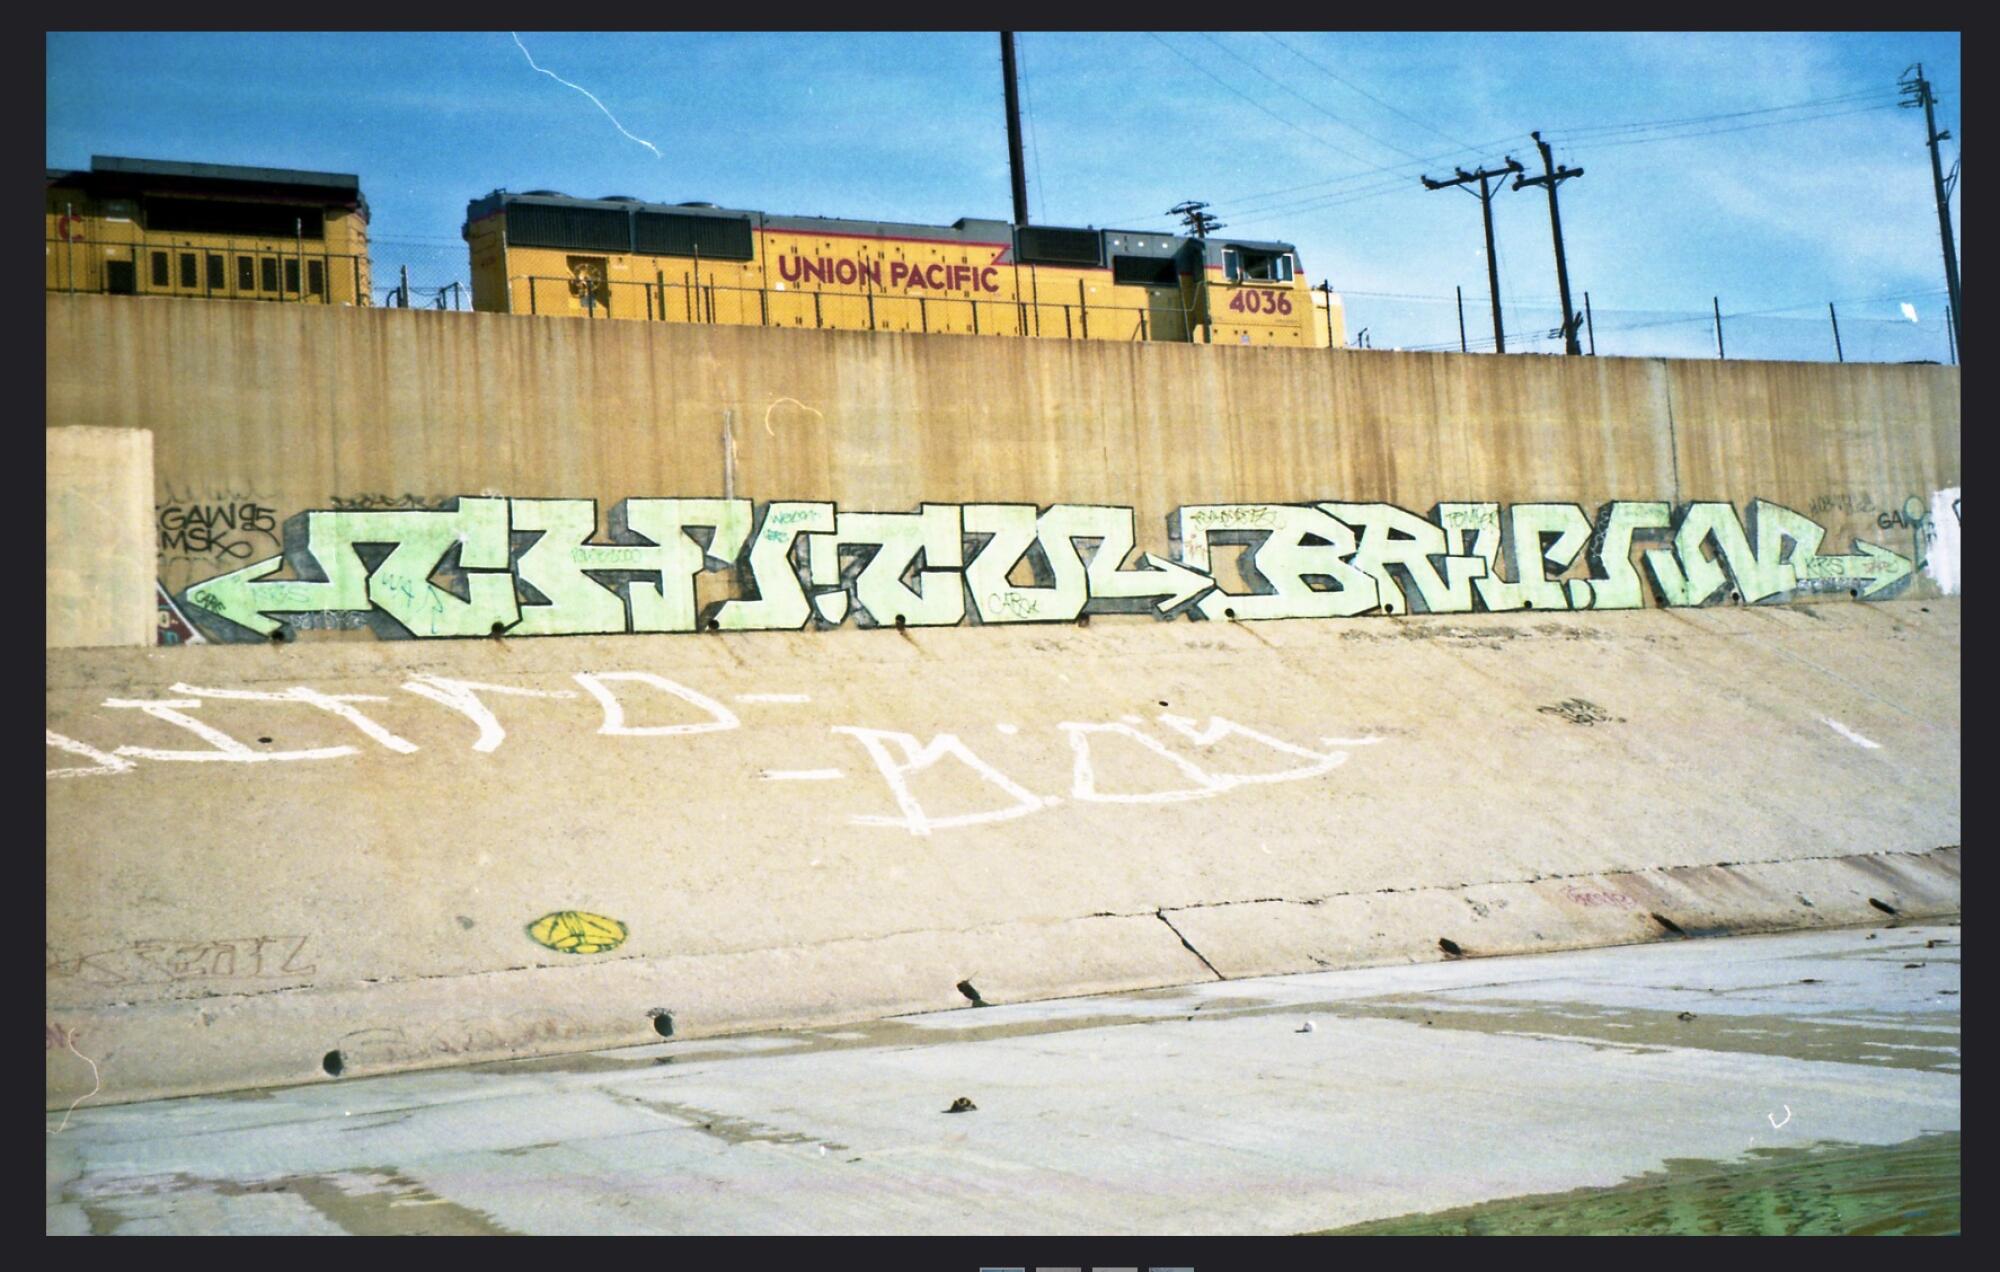 A graffiti display in the L.A. River.